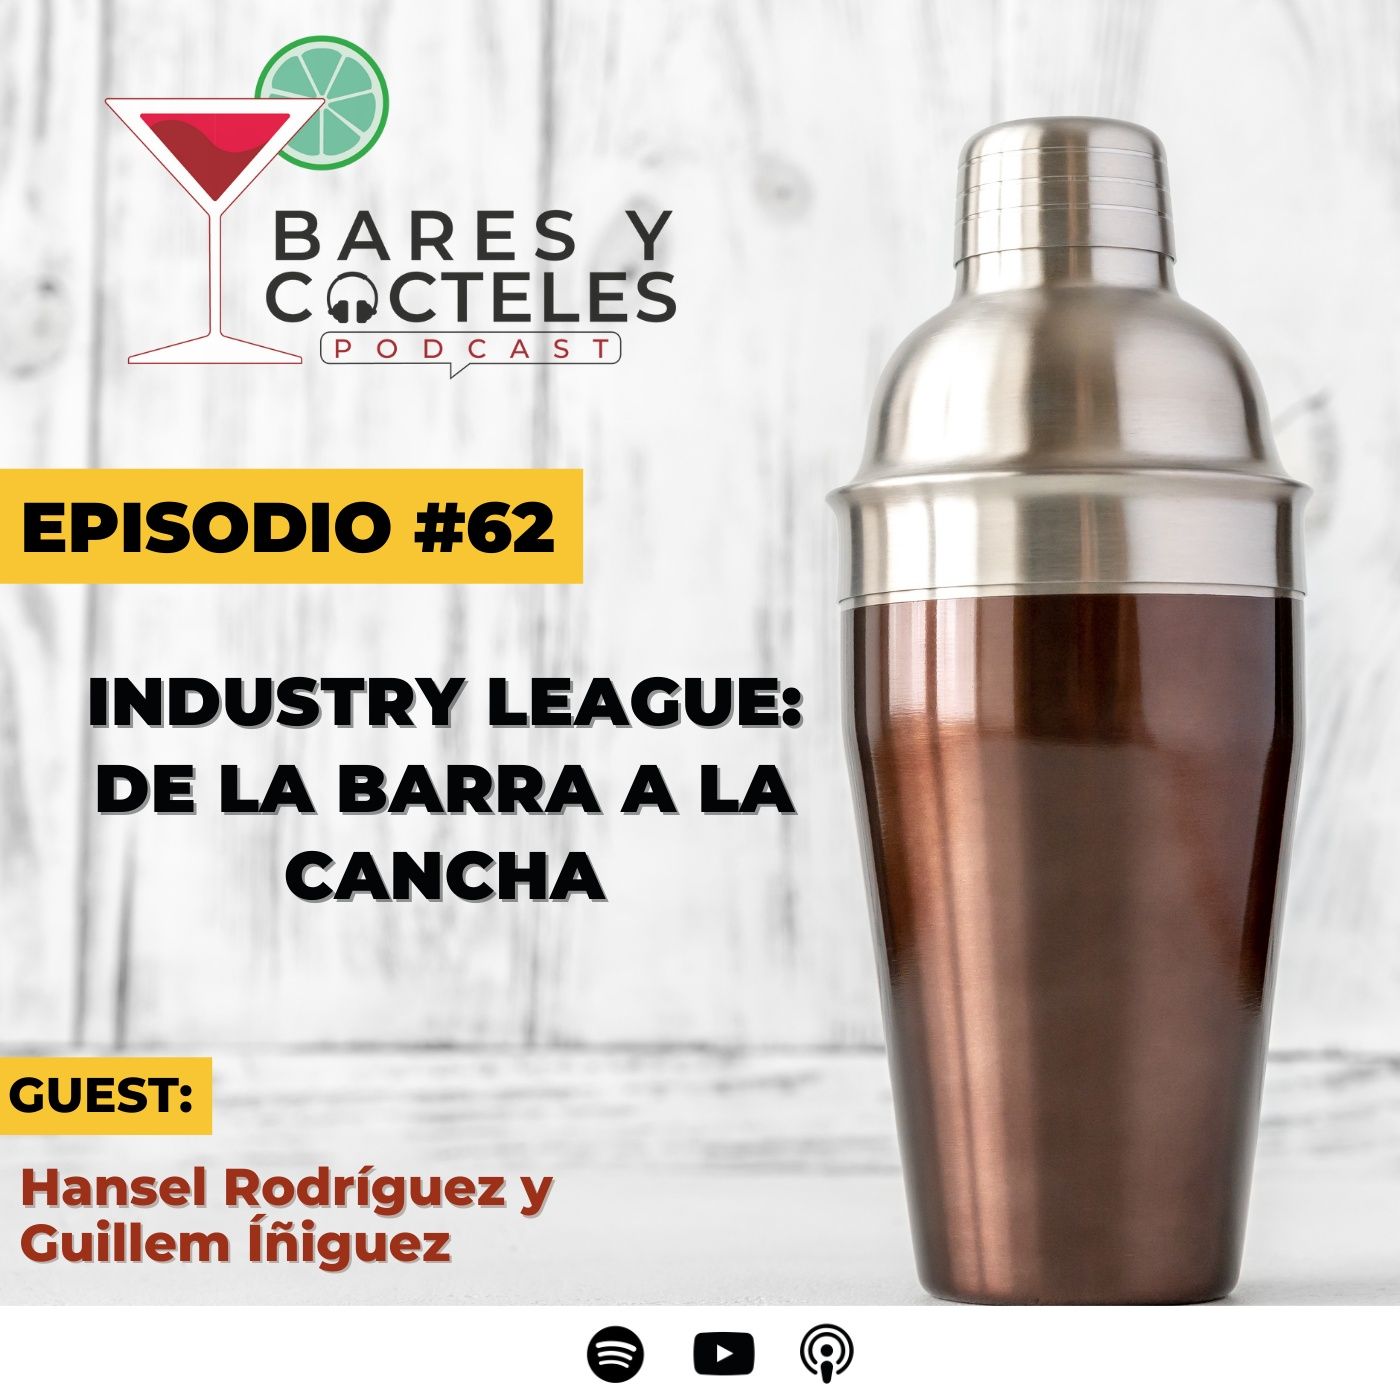 Ep. 62 Industry League: De la Barra a la cancha